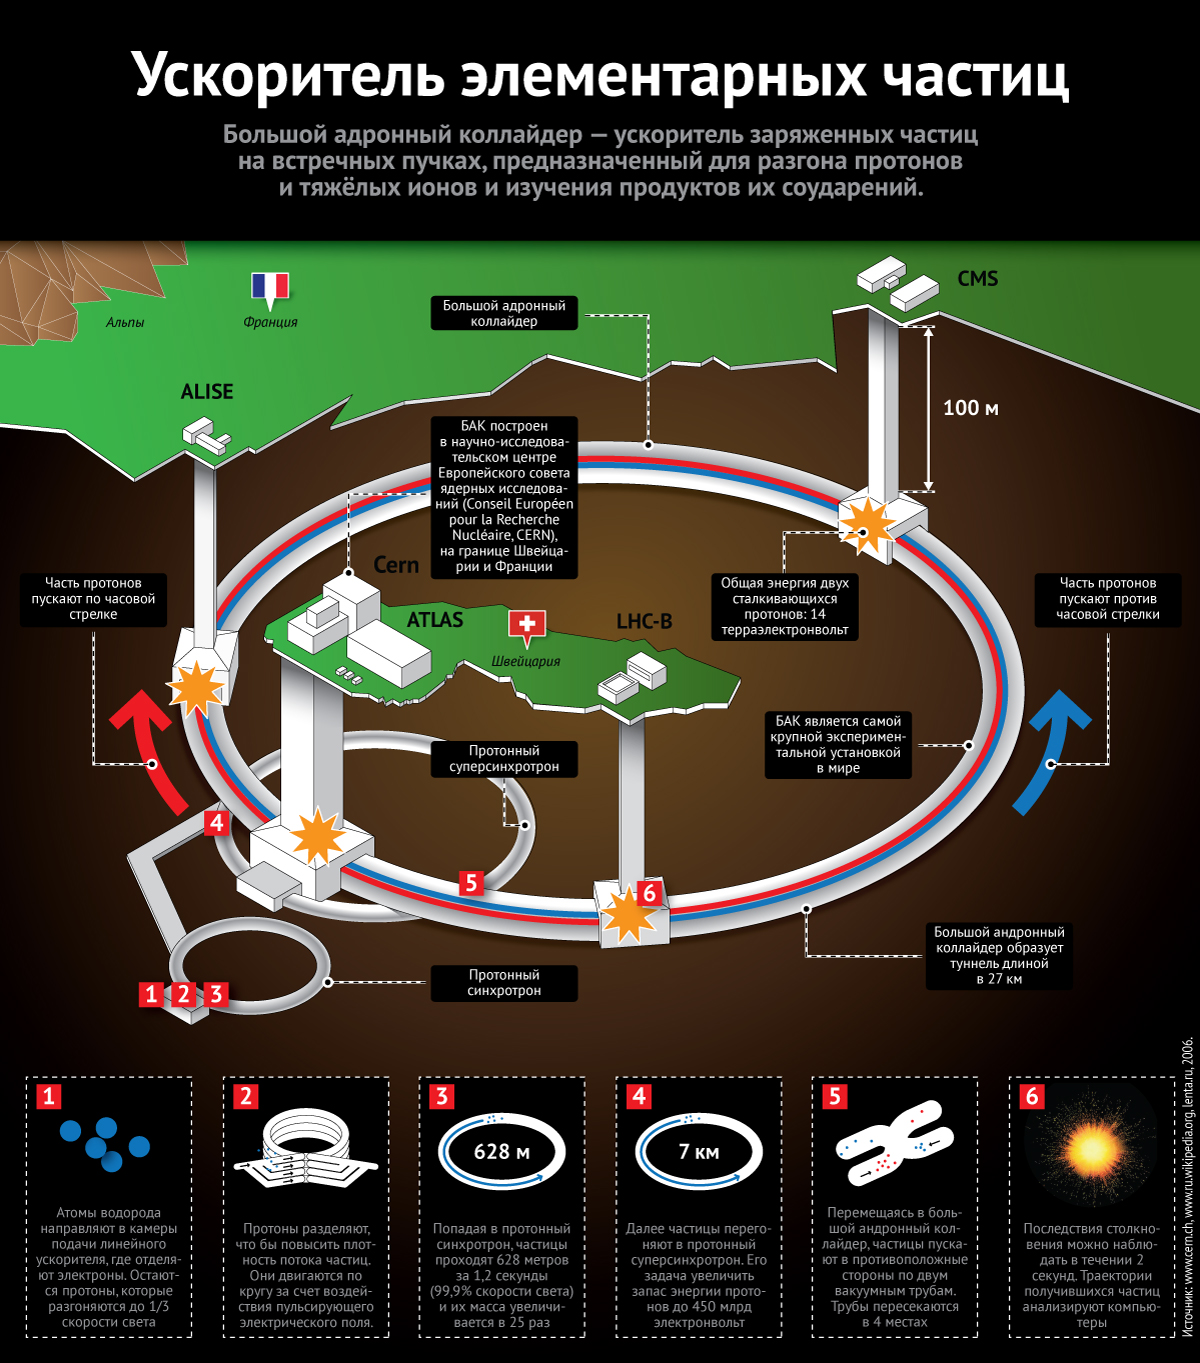 Инфографика Большого адронного коллайдера